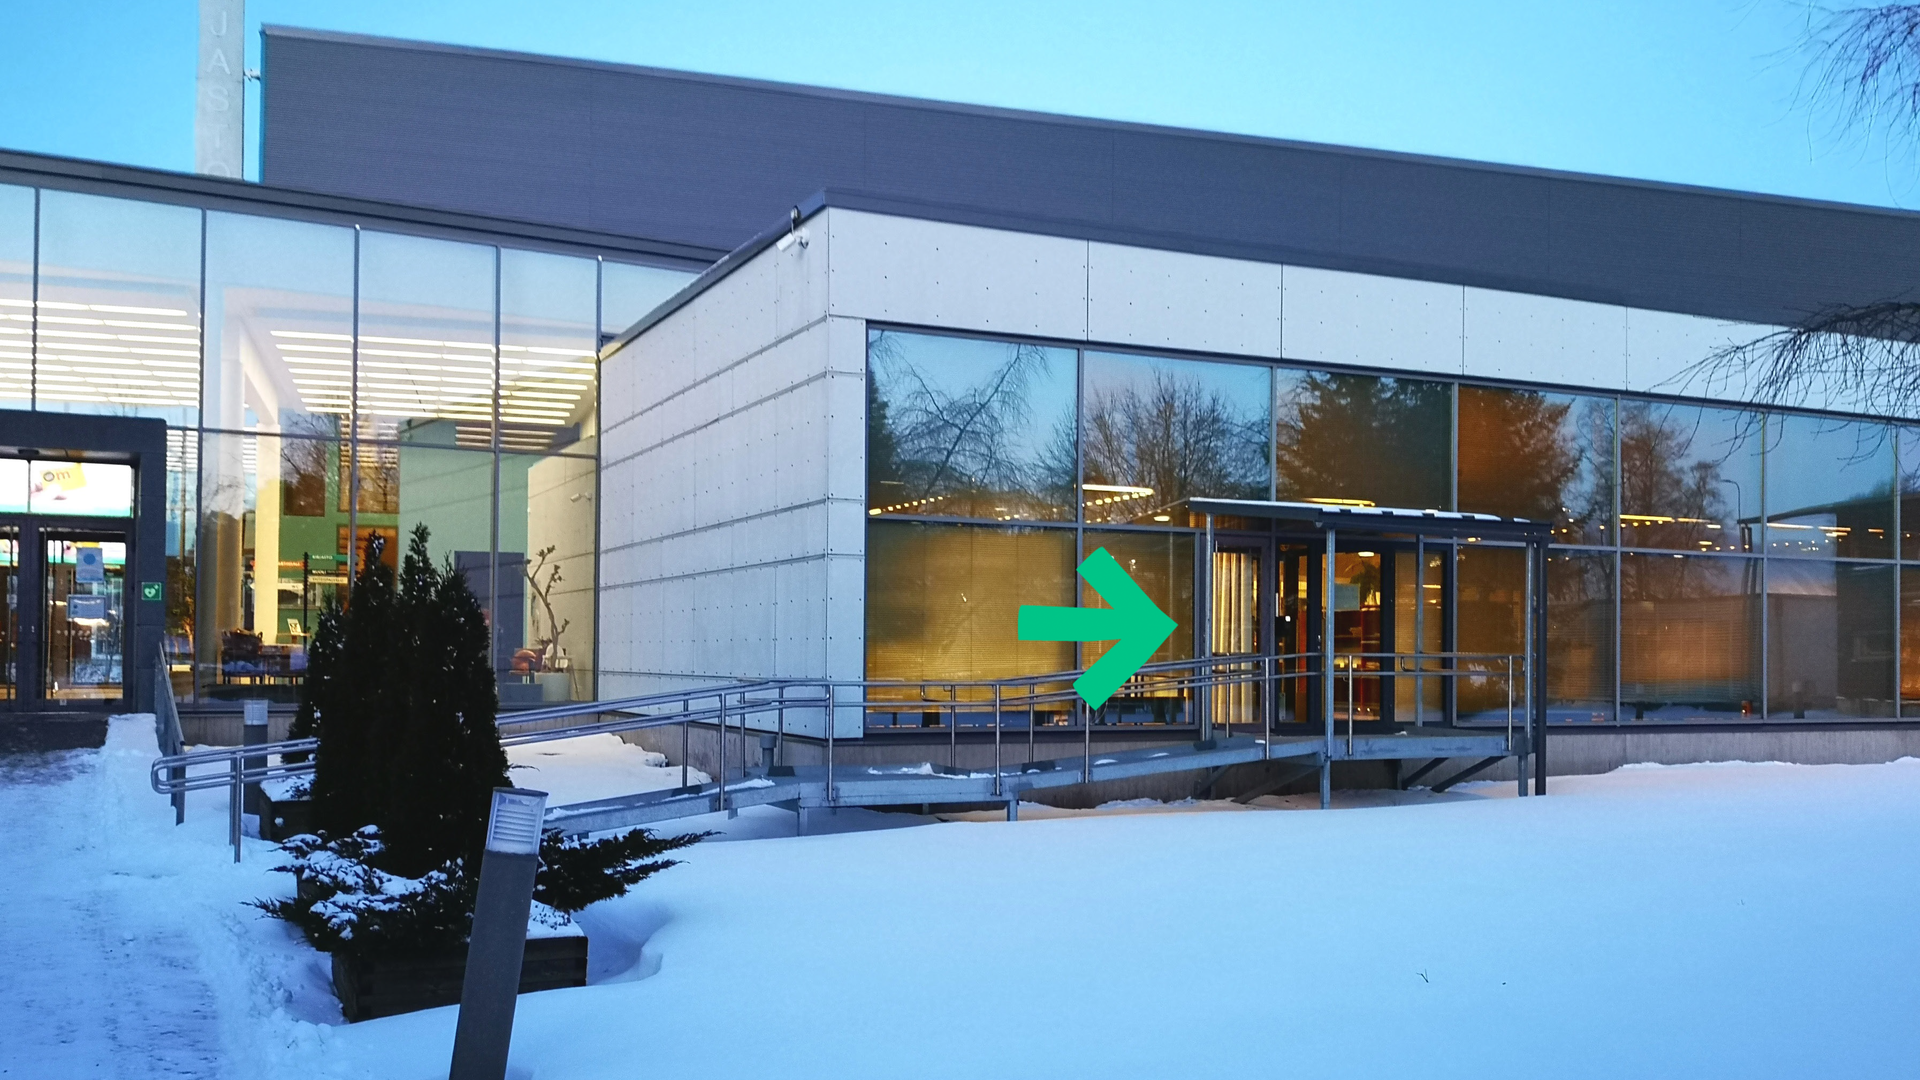 Raision Kirjastotalon talvella. Kuvassa vihreä nuoli osoittaa uutta sisäänpääsyä omatoimialueelle.